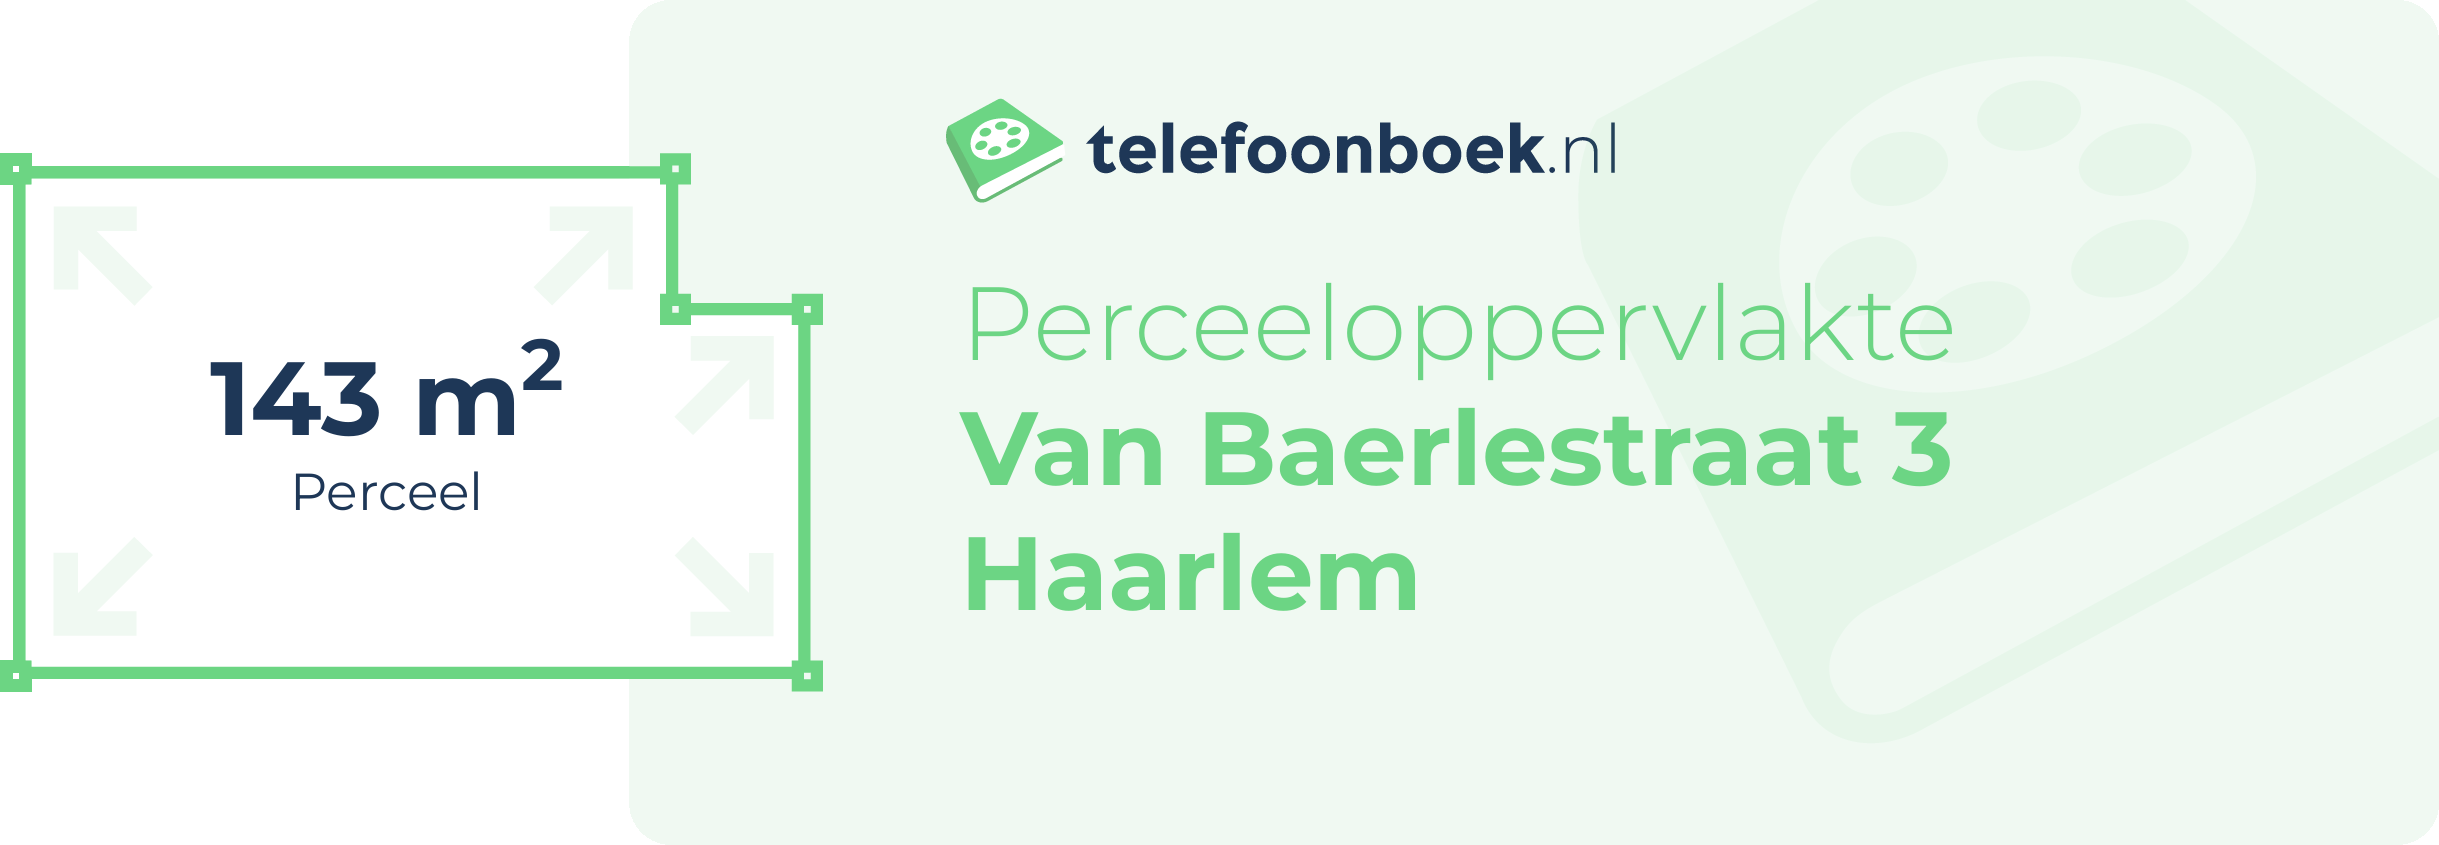 Perceeloppervlakte Van Baerlestraat 3 Haarlem